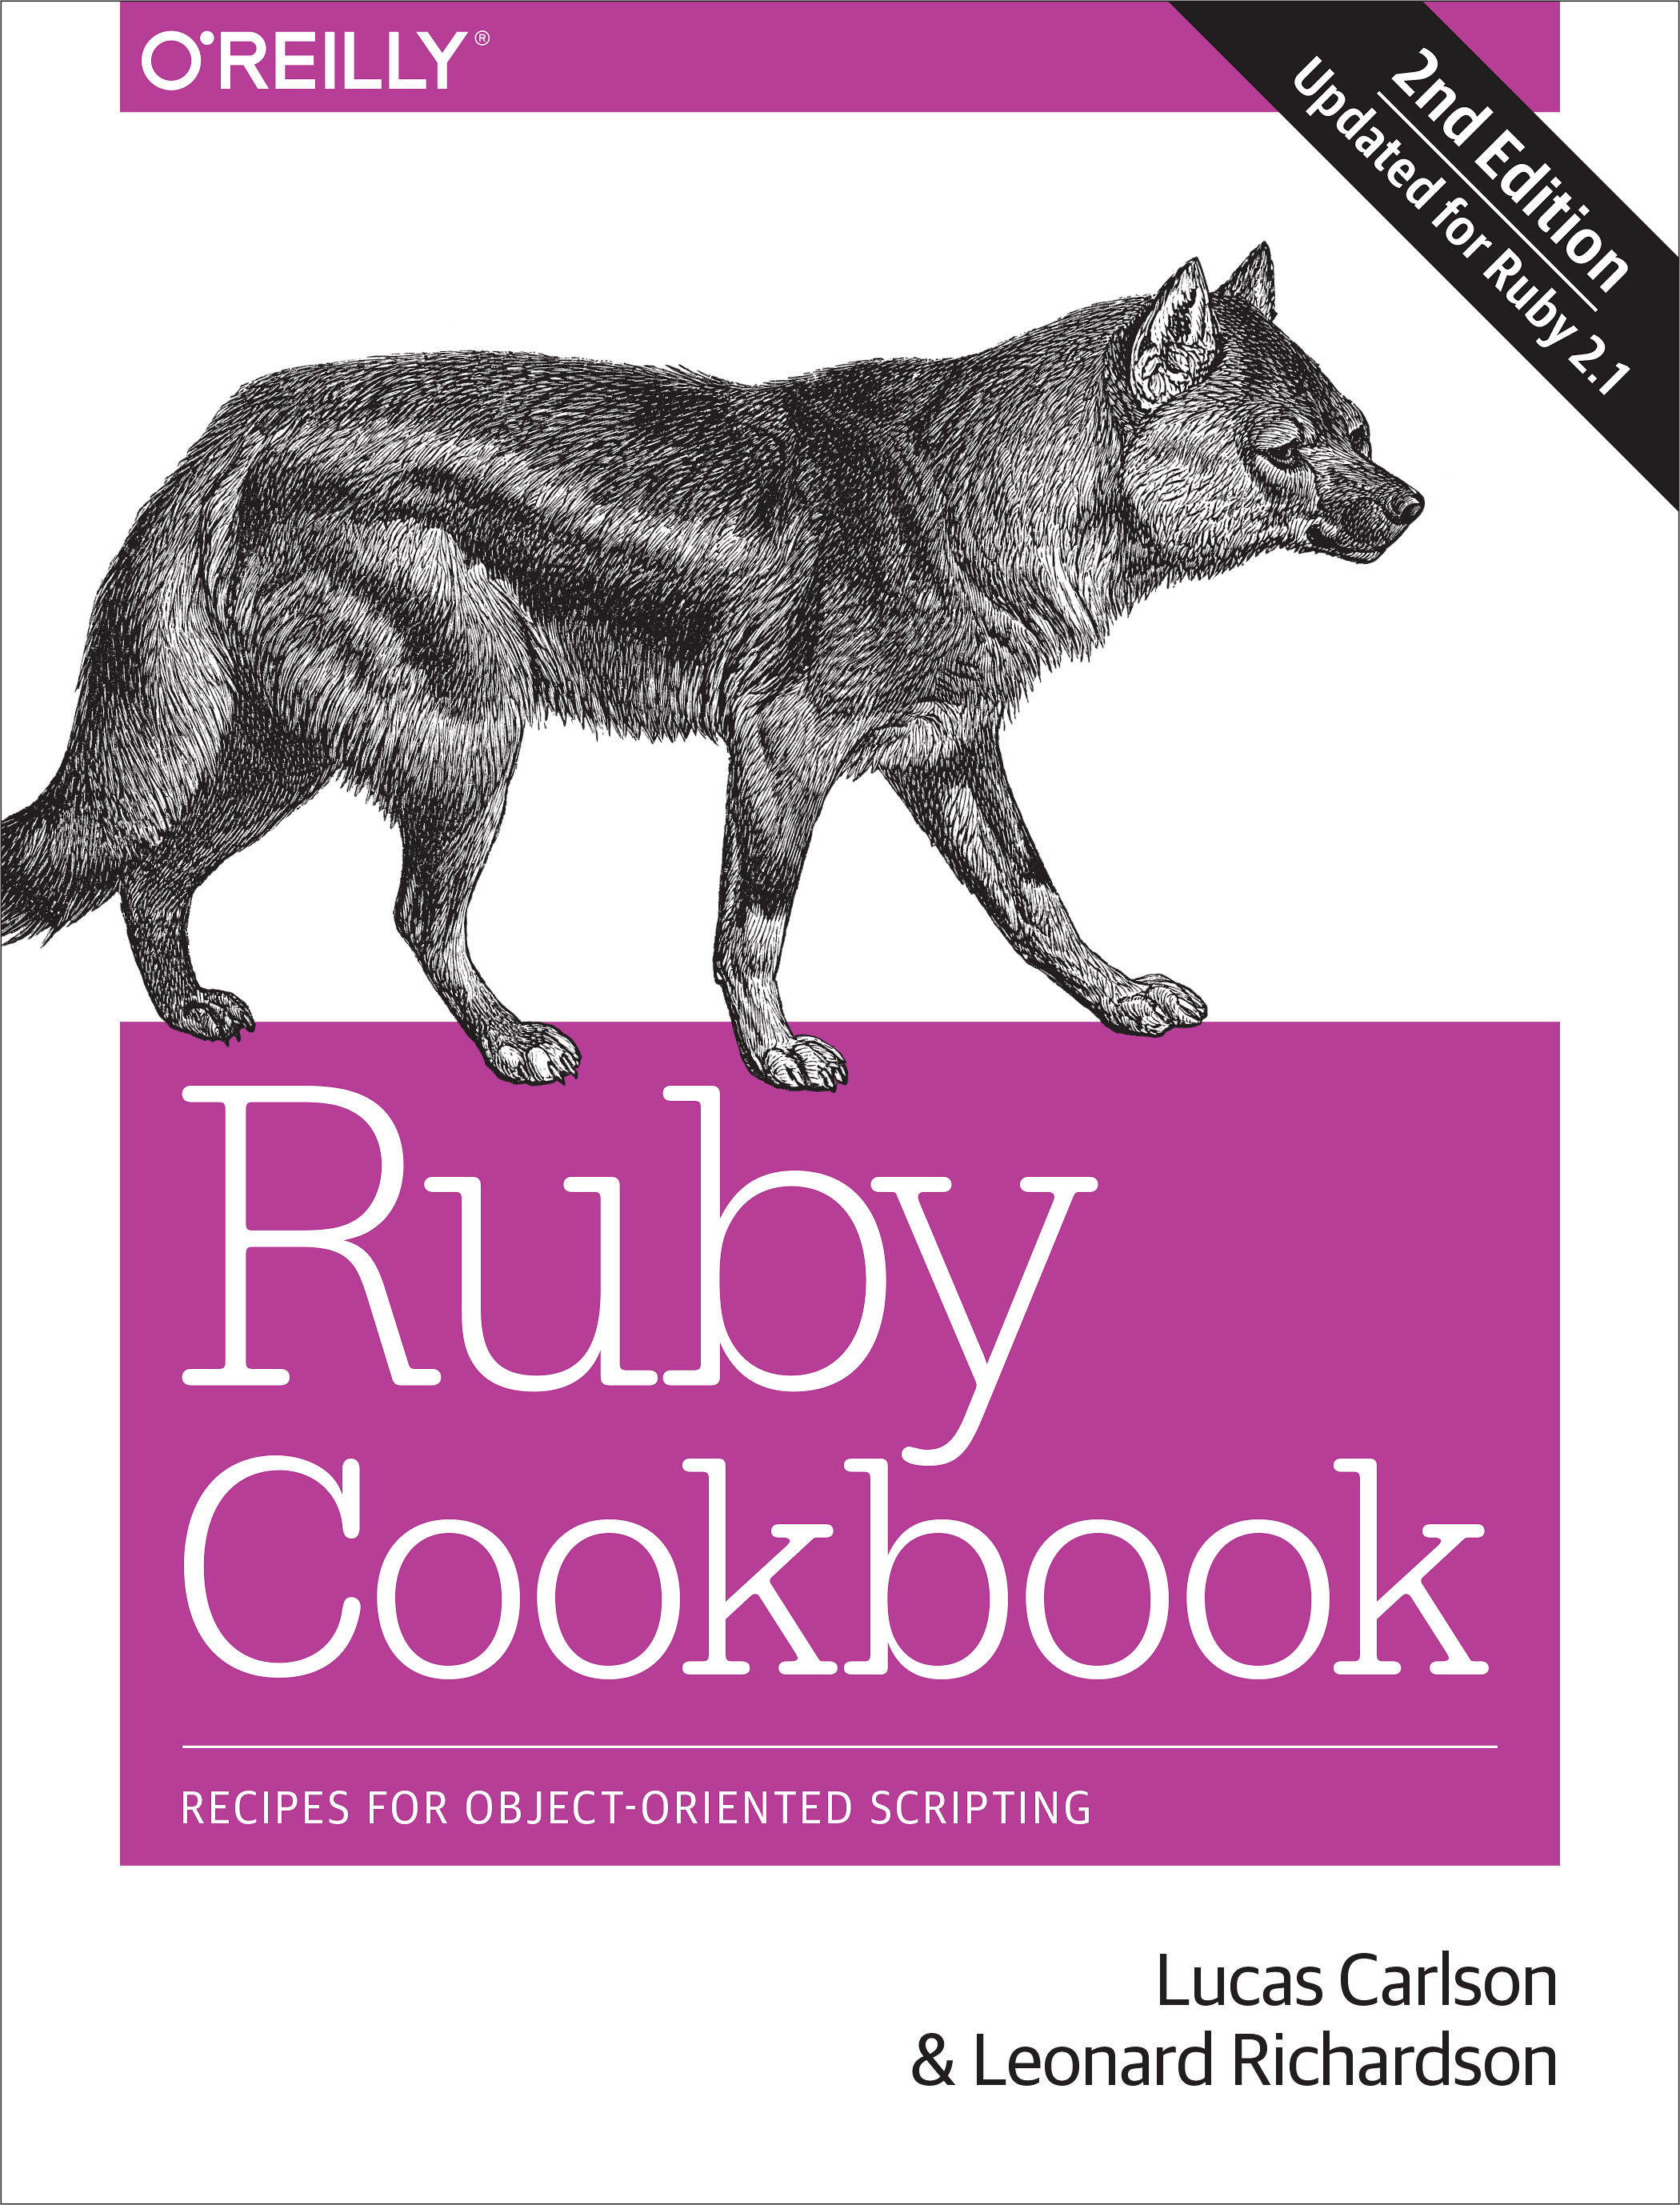 Руби на английском. Ruby o'Reilly. Рубиновый на английском. Книги по программированию с животными на обложке o Reilly.